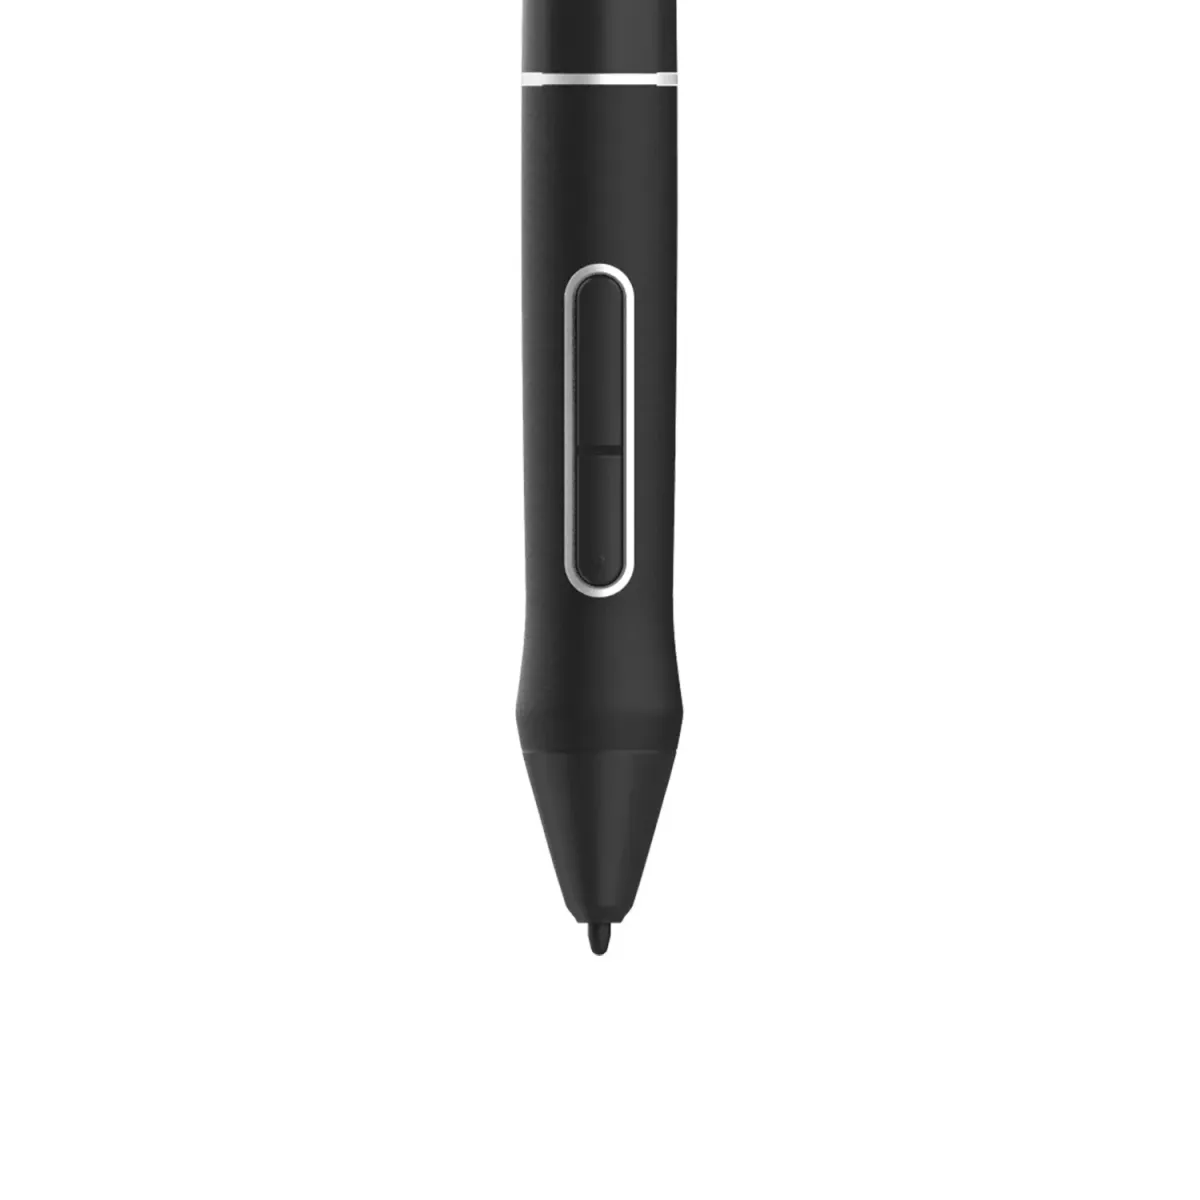 Kamvas 13 Digital Drawing Pen Display for Beginners.